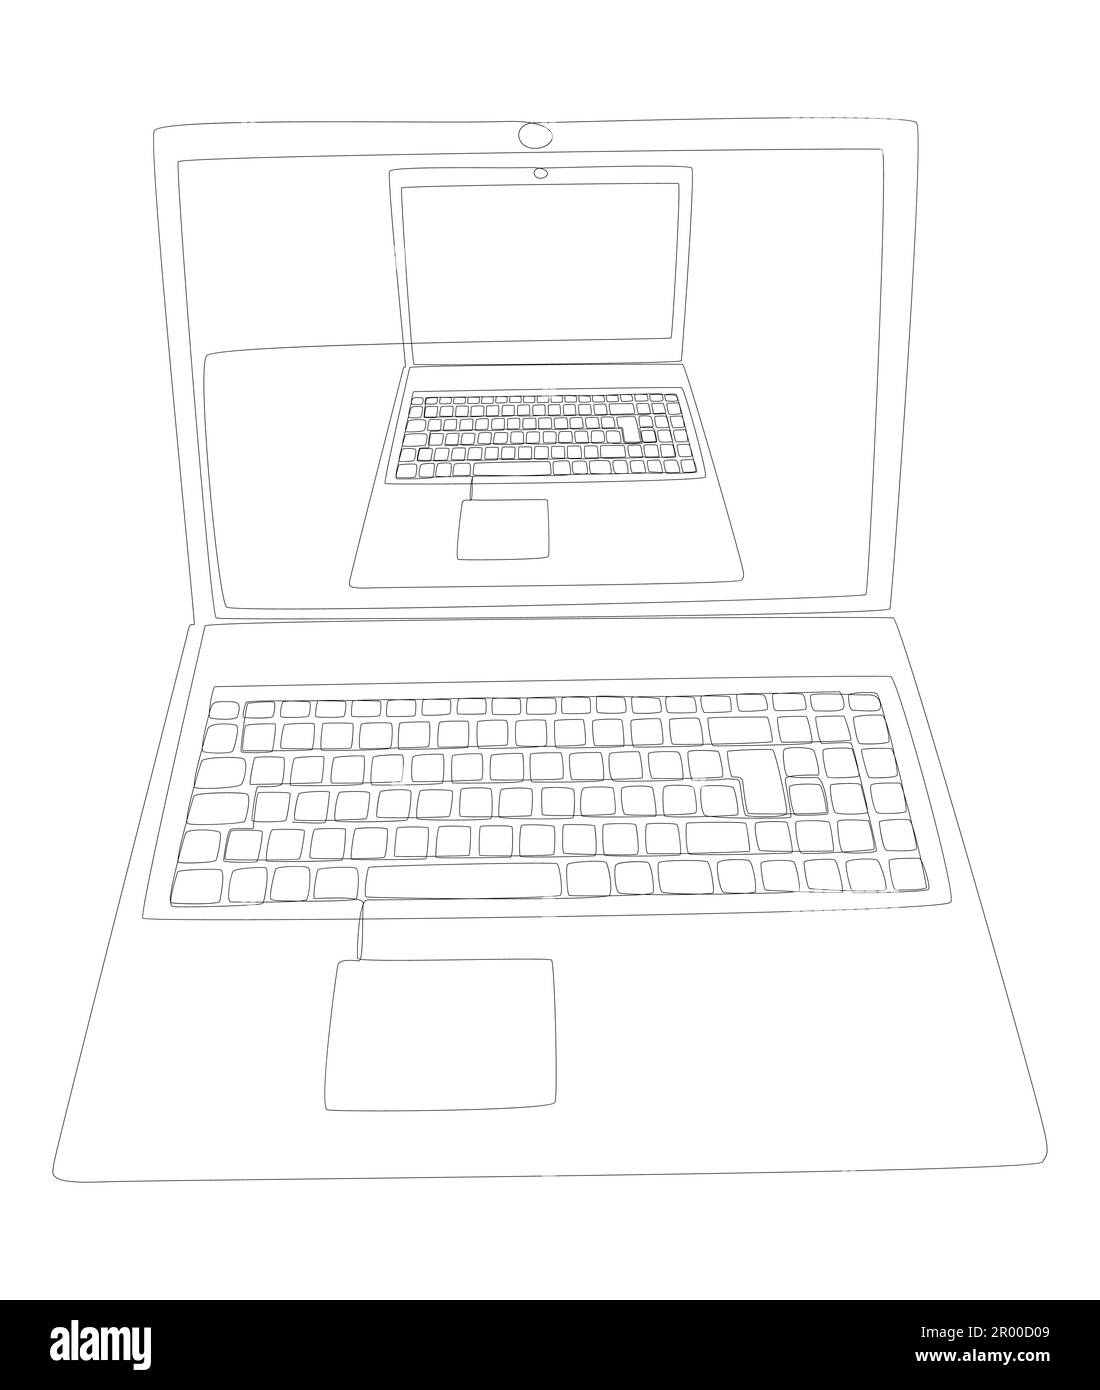 Una linea continua di notebook. Concetto di computer portatile vettoriale  con illustrazione a linee sottili. Disegno di contorno idee creative  Immagine e Vettoriale - Alamy